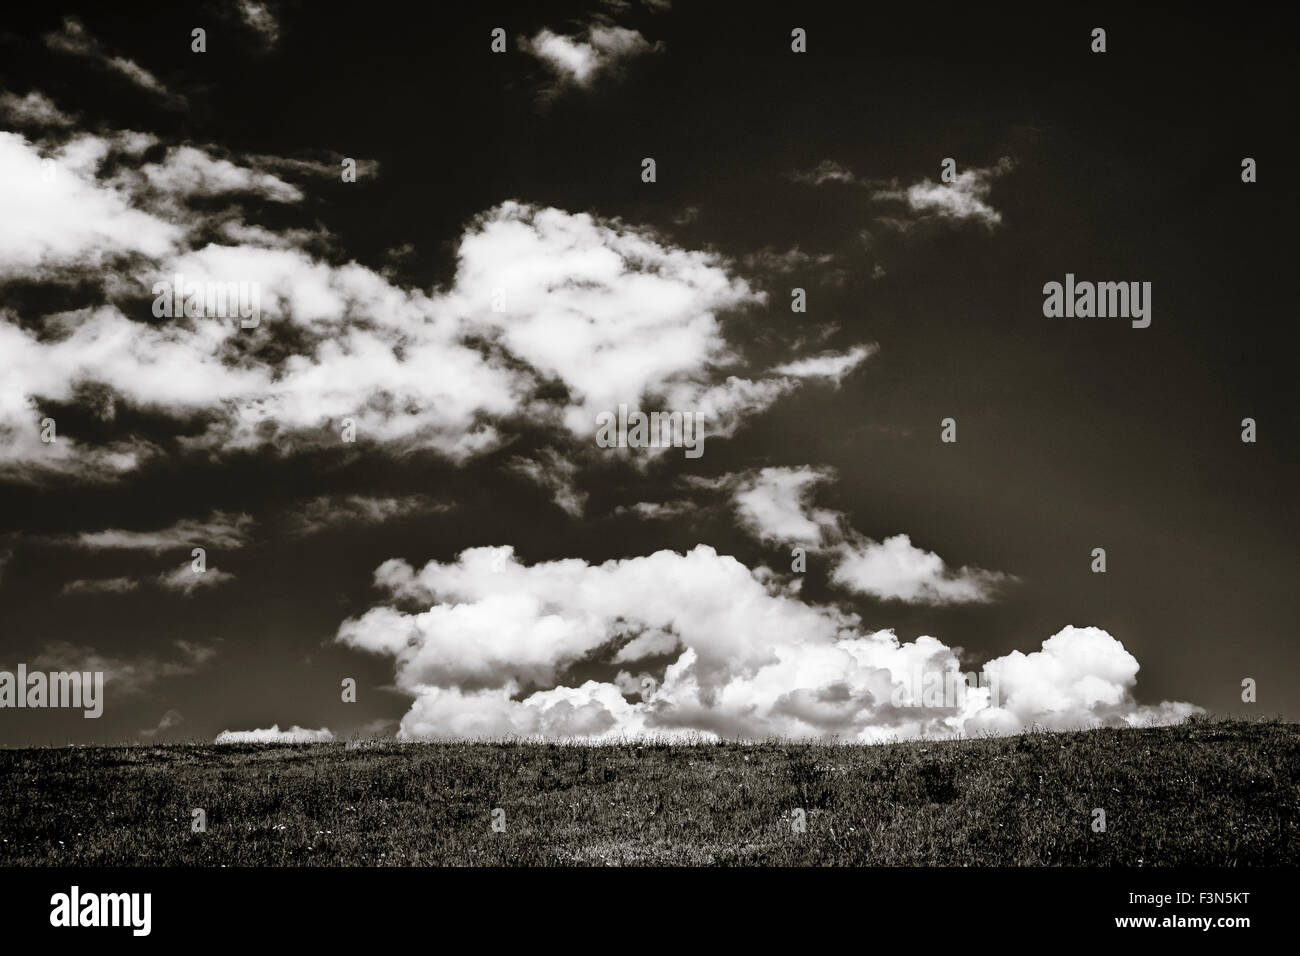 Schwarz / weiß Wolkengebilde mit großen weißen Wolken über dem Rasen. Foto in Siebenbürgen, Rumänien. Stockfoto